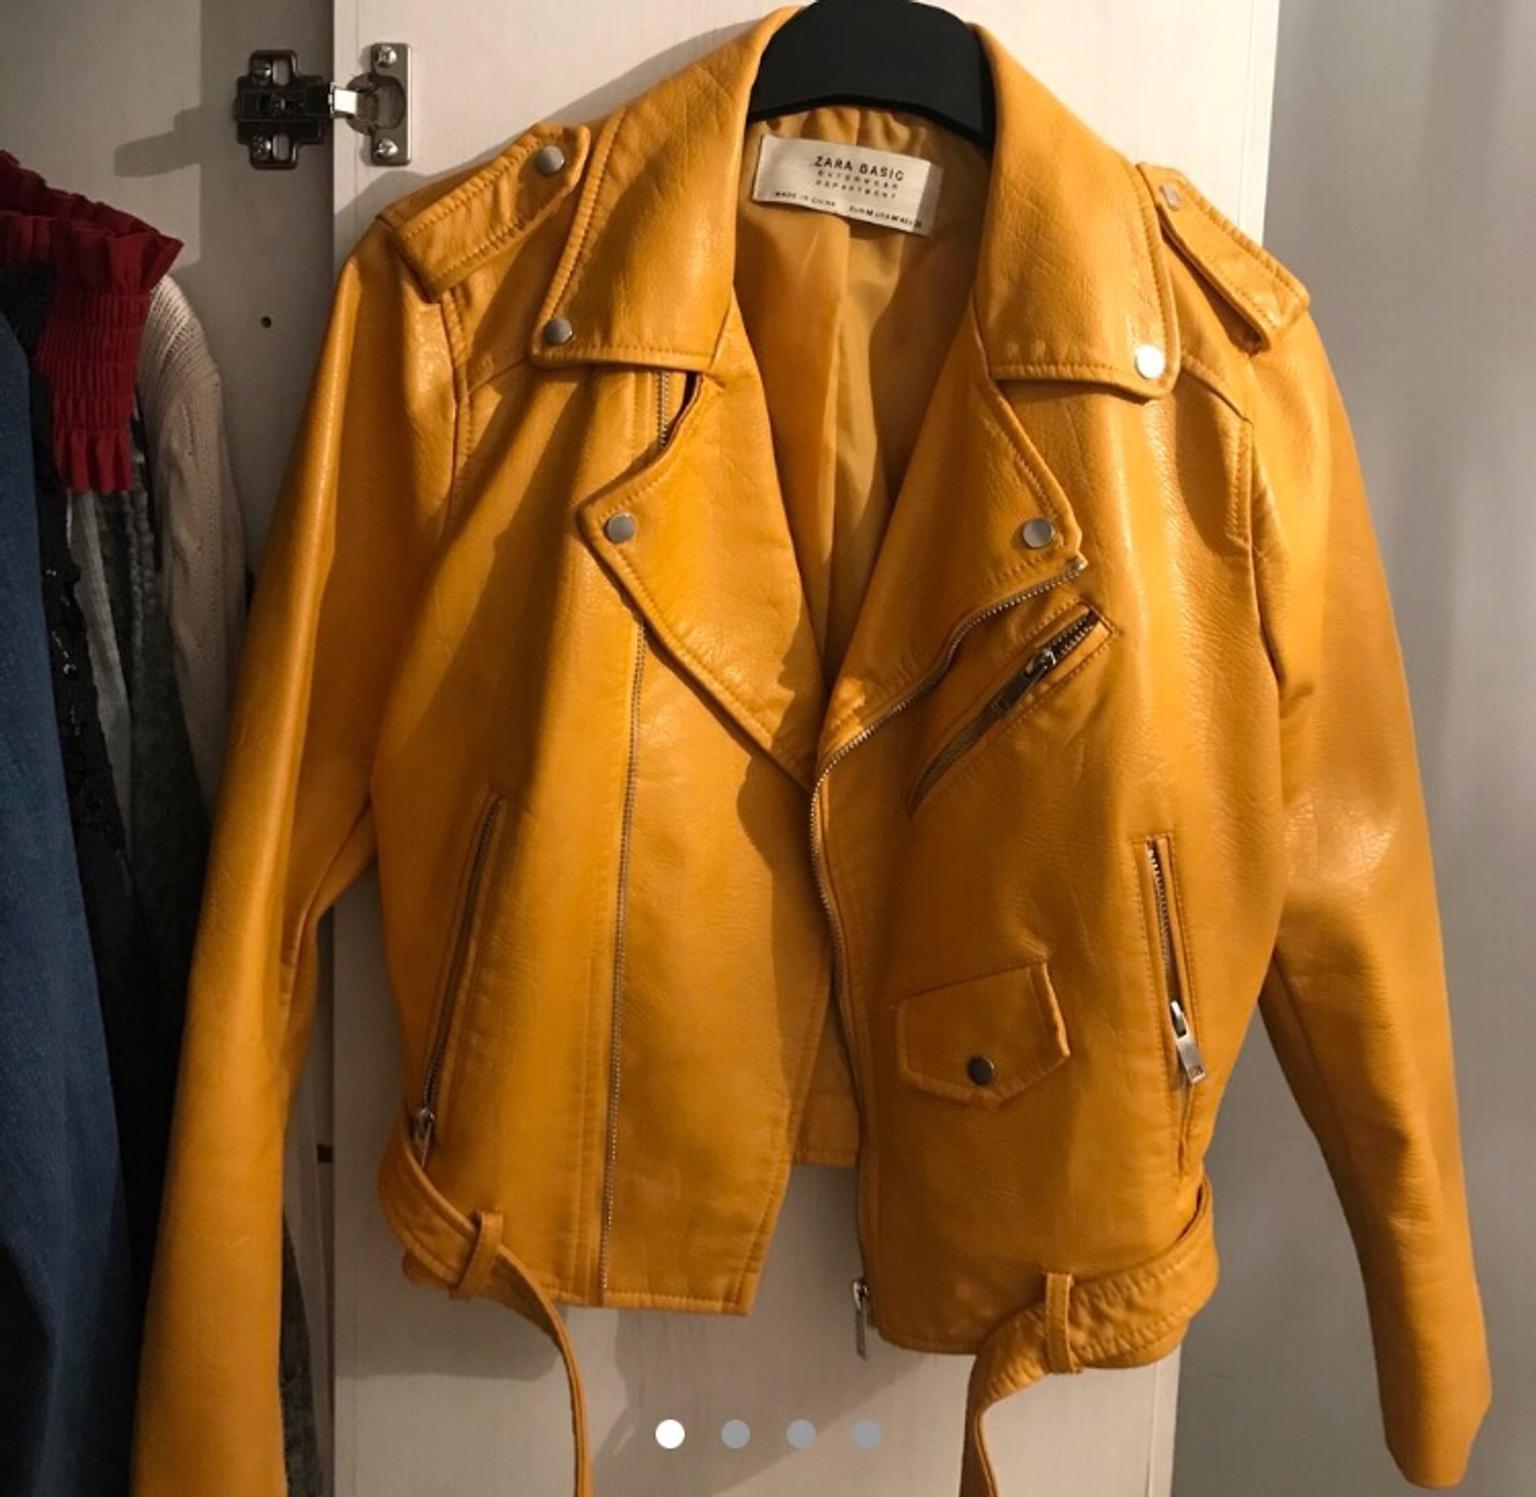 Mustard leather jacket from Zara in W2 